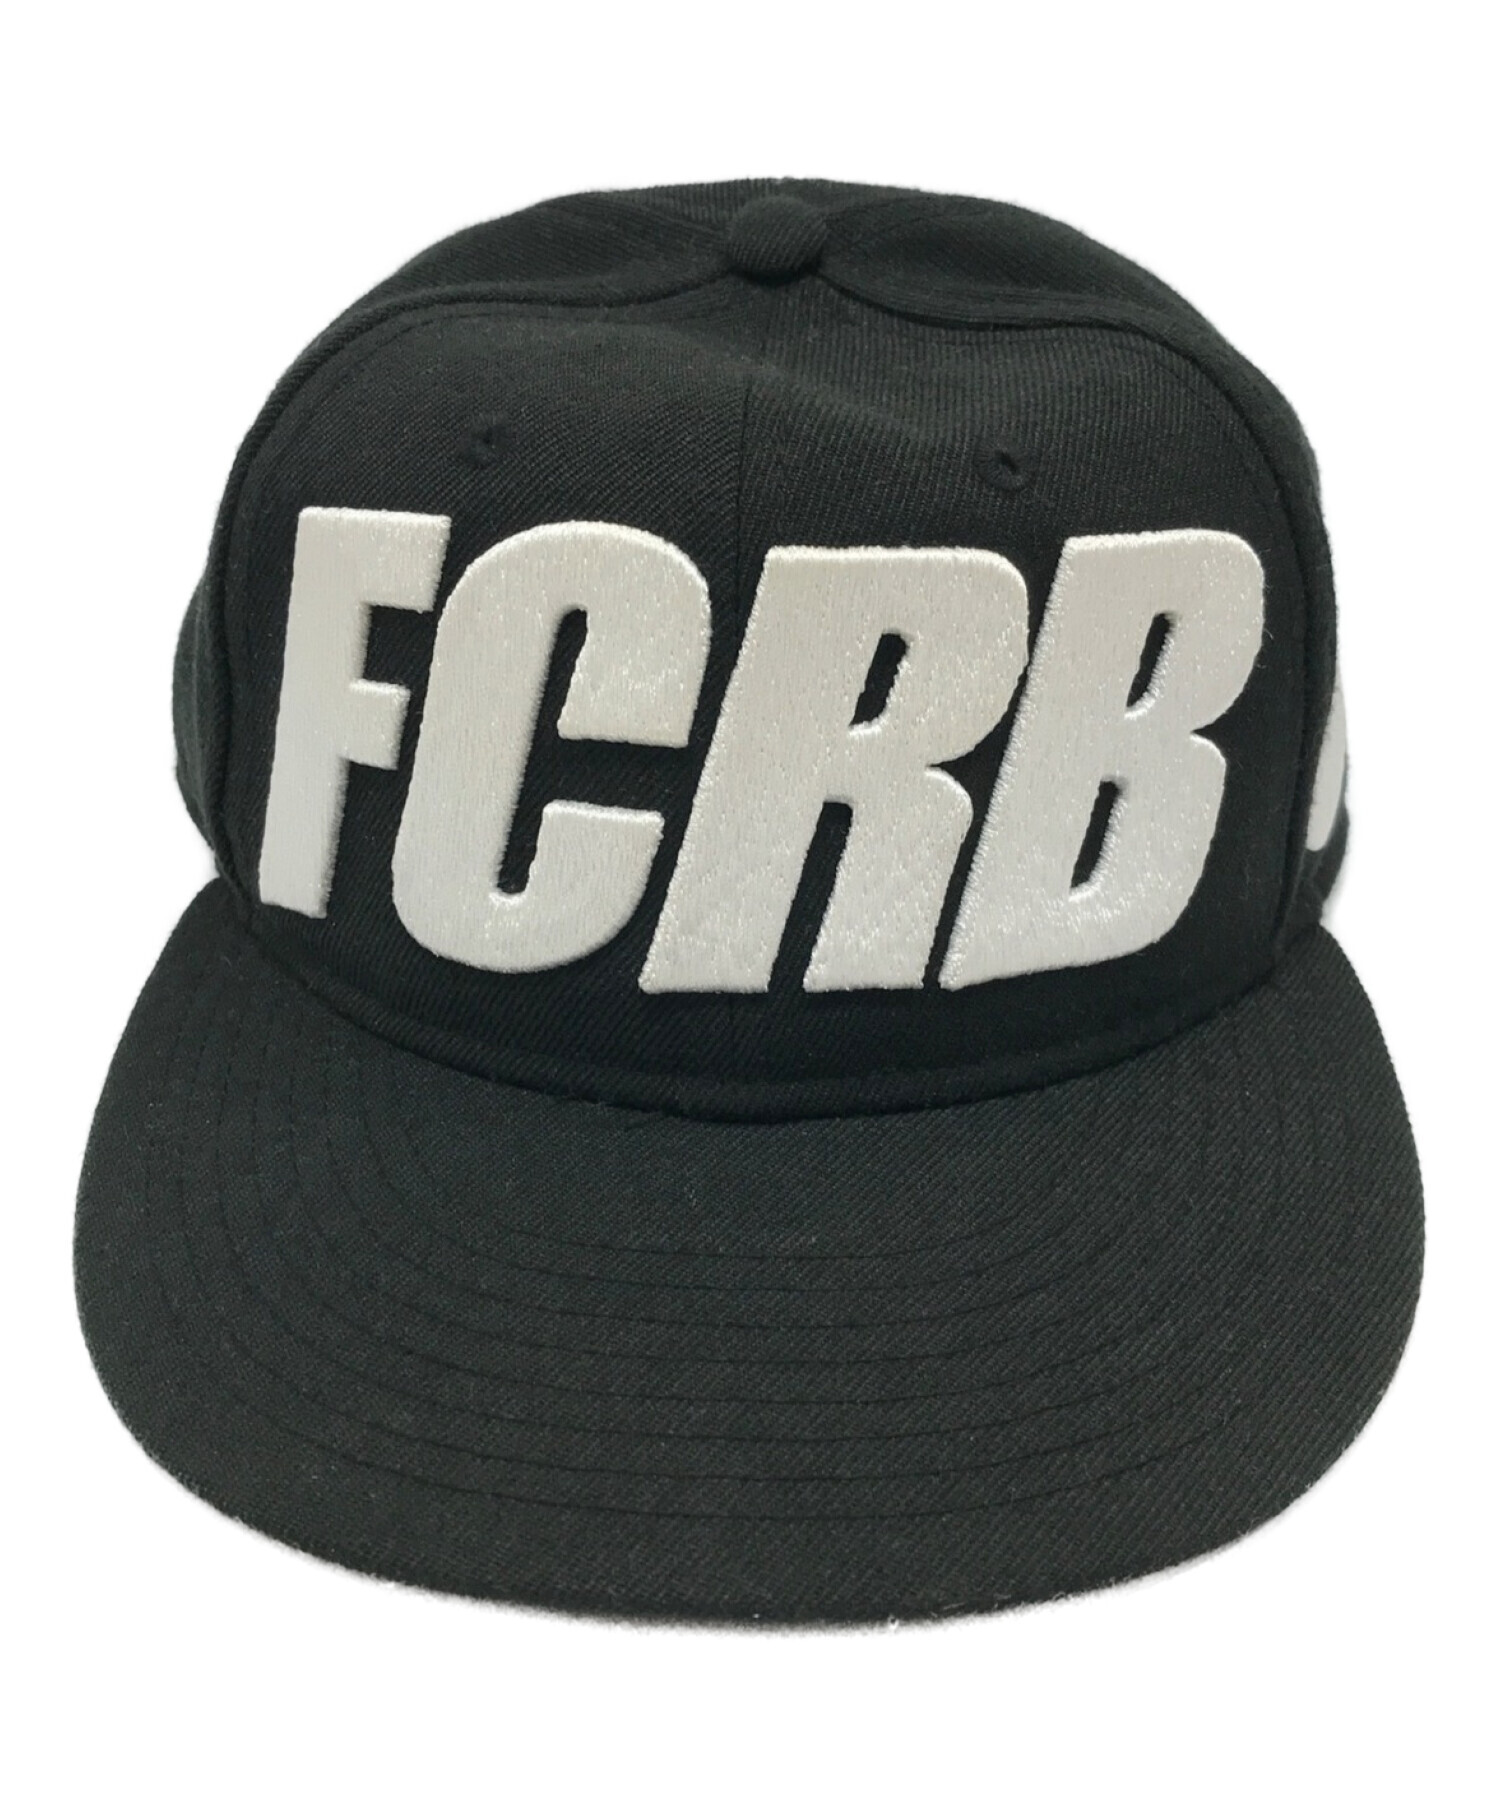 FCRB CAP NIKE